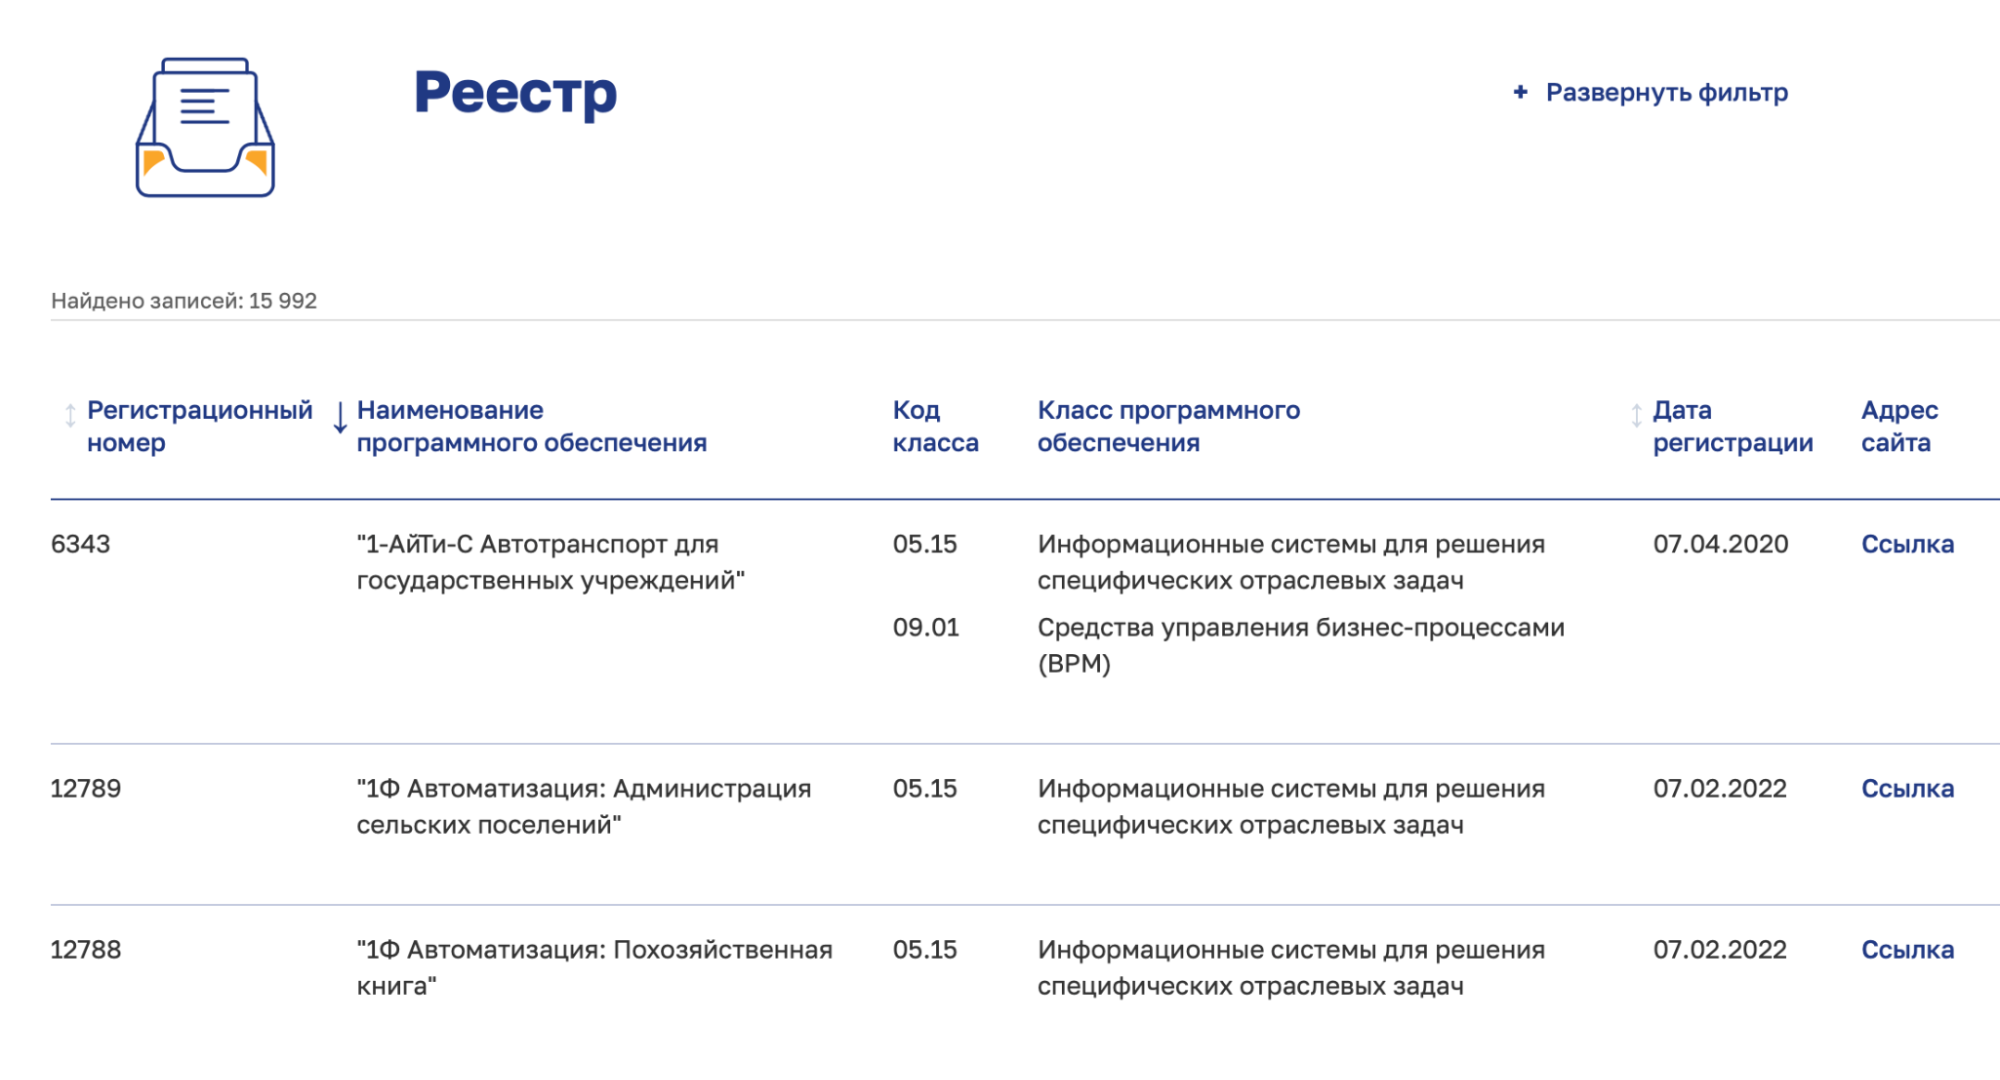 Регистрационные номера в российском реестре состоят только из цифр. Красная пометка возле класса указывает, по какому классификатору определялась программа. Для ПО, которое регистрировали до 2021 года, использовали документ, утвержденный в 2015 году. Для новых программ — классификатор от 22 сентября 2020 года